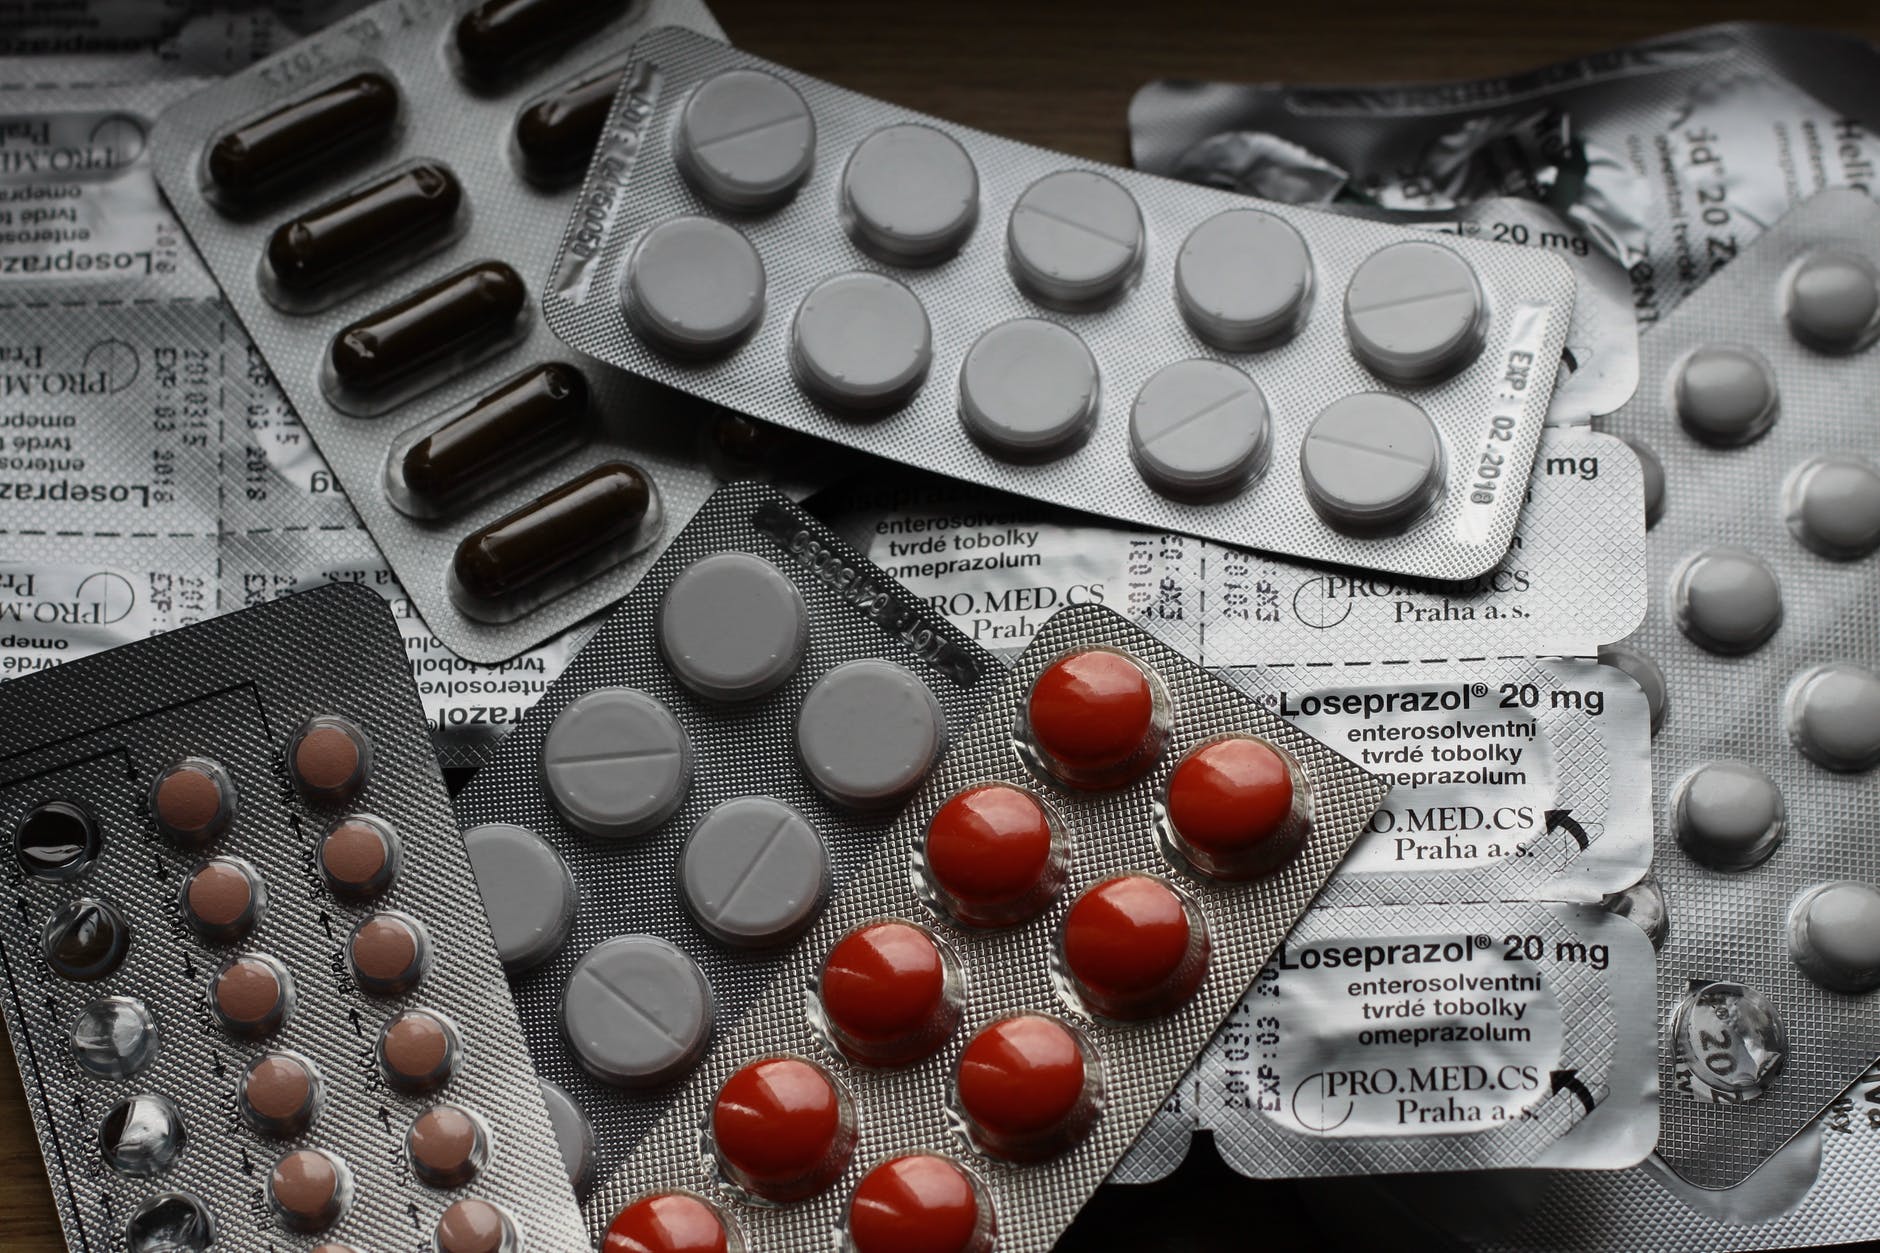 Uso de medicamentos por idosos: alerta sobre o excesso de remédios